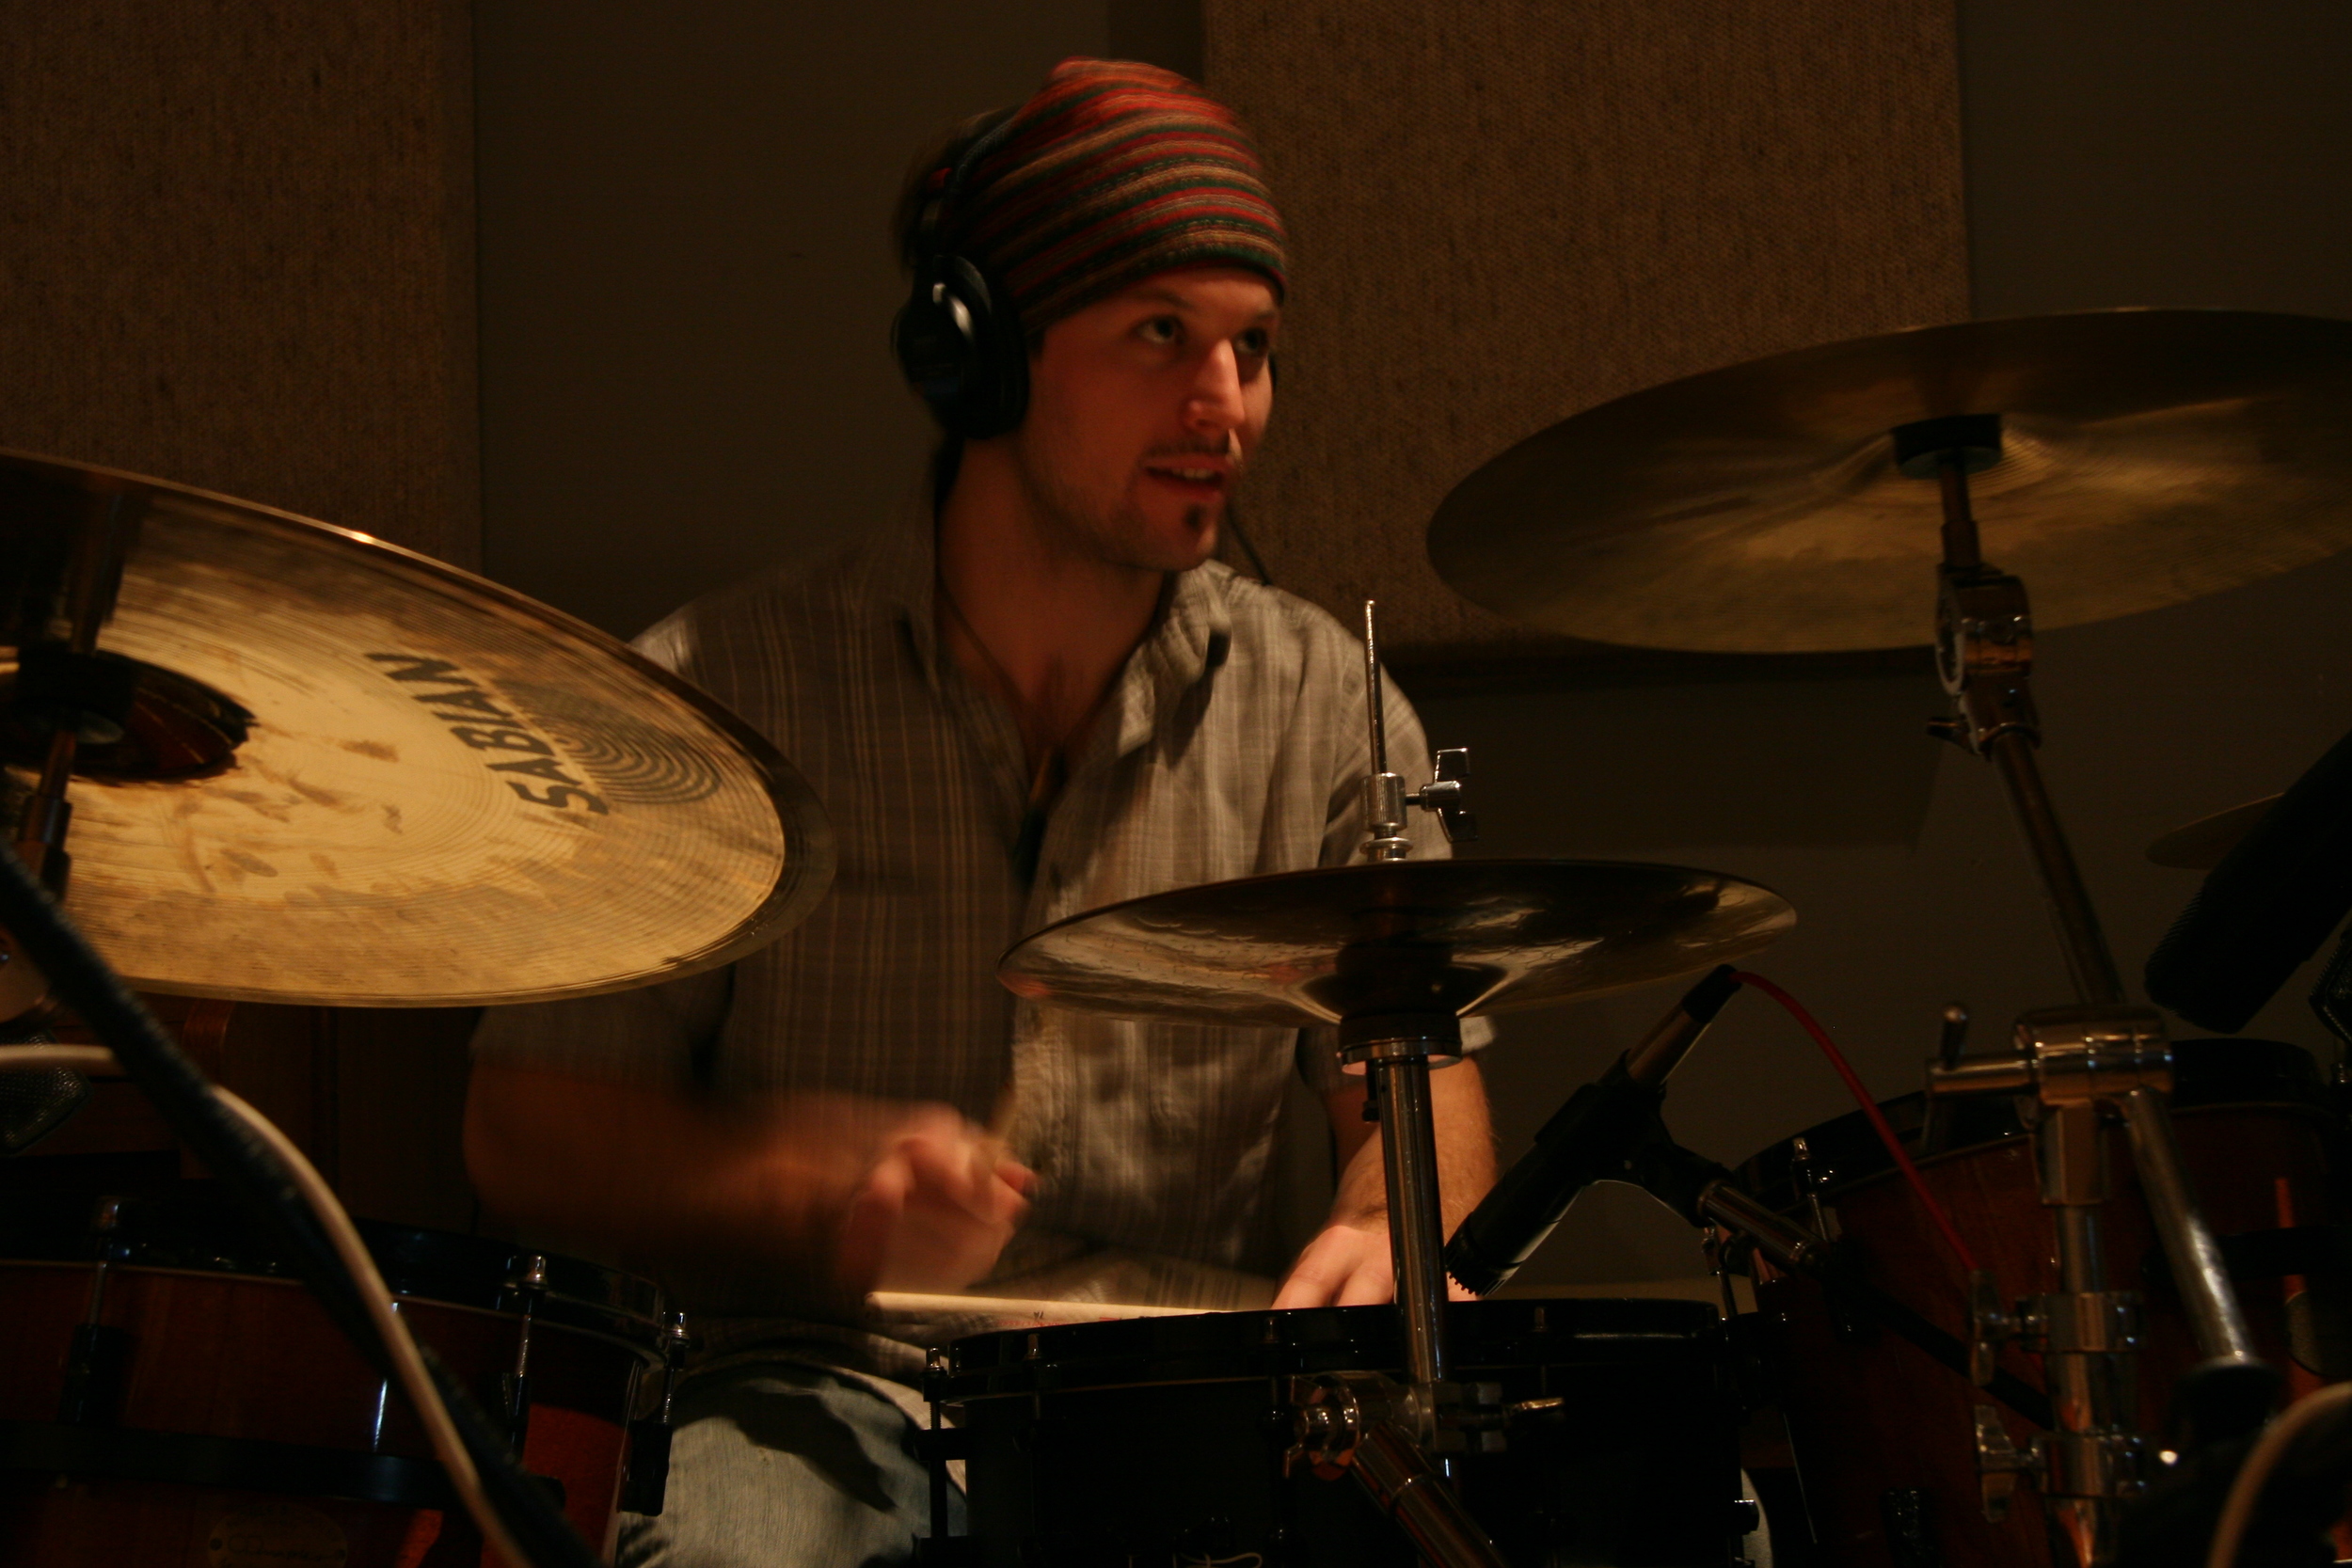 Seth @ drums 1.JPG